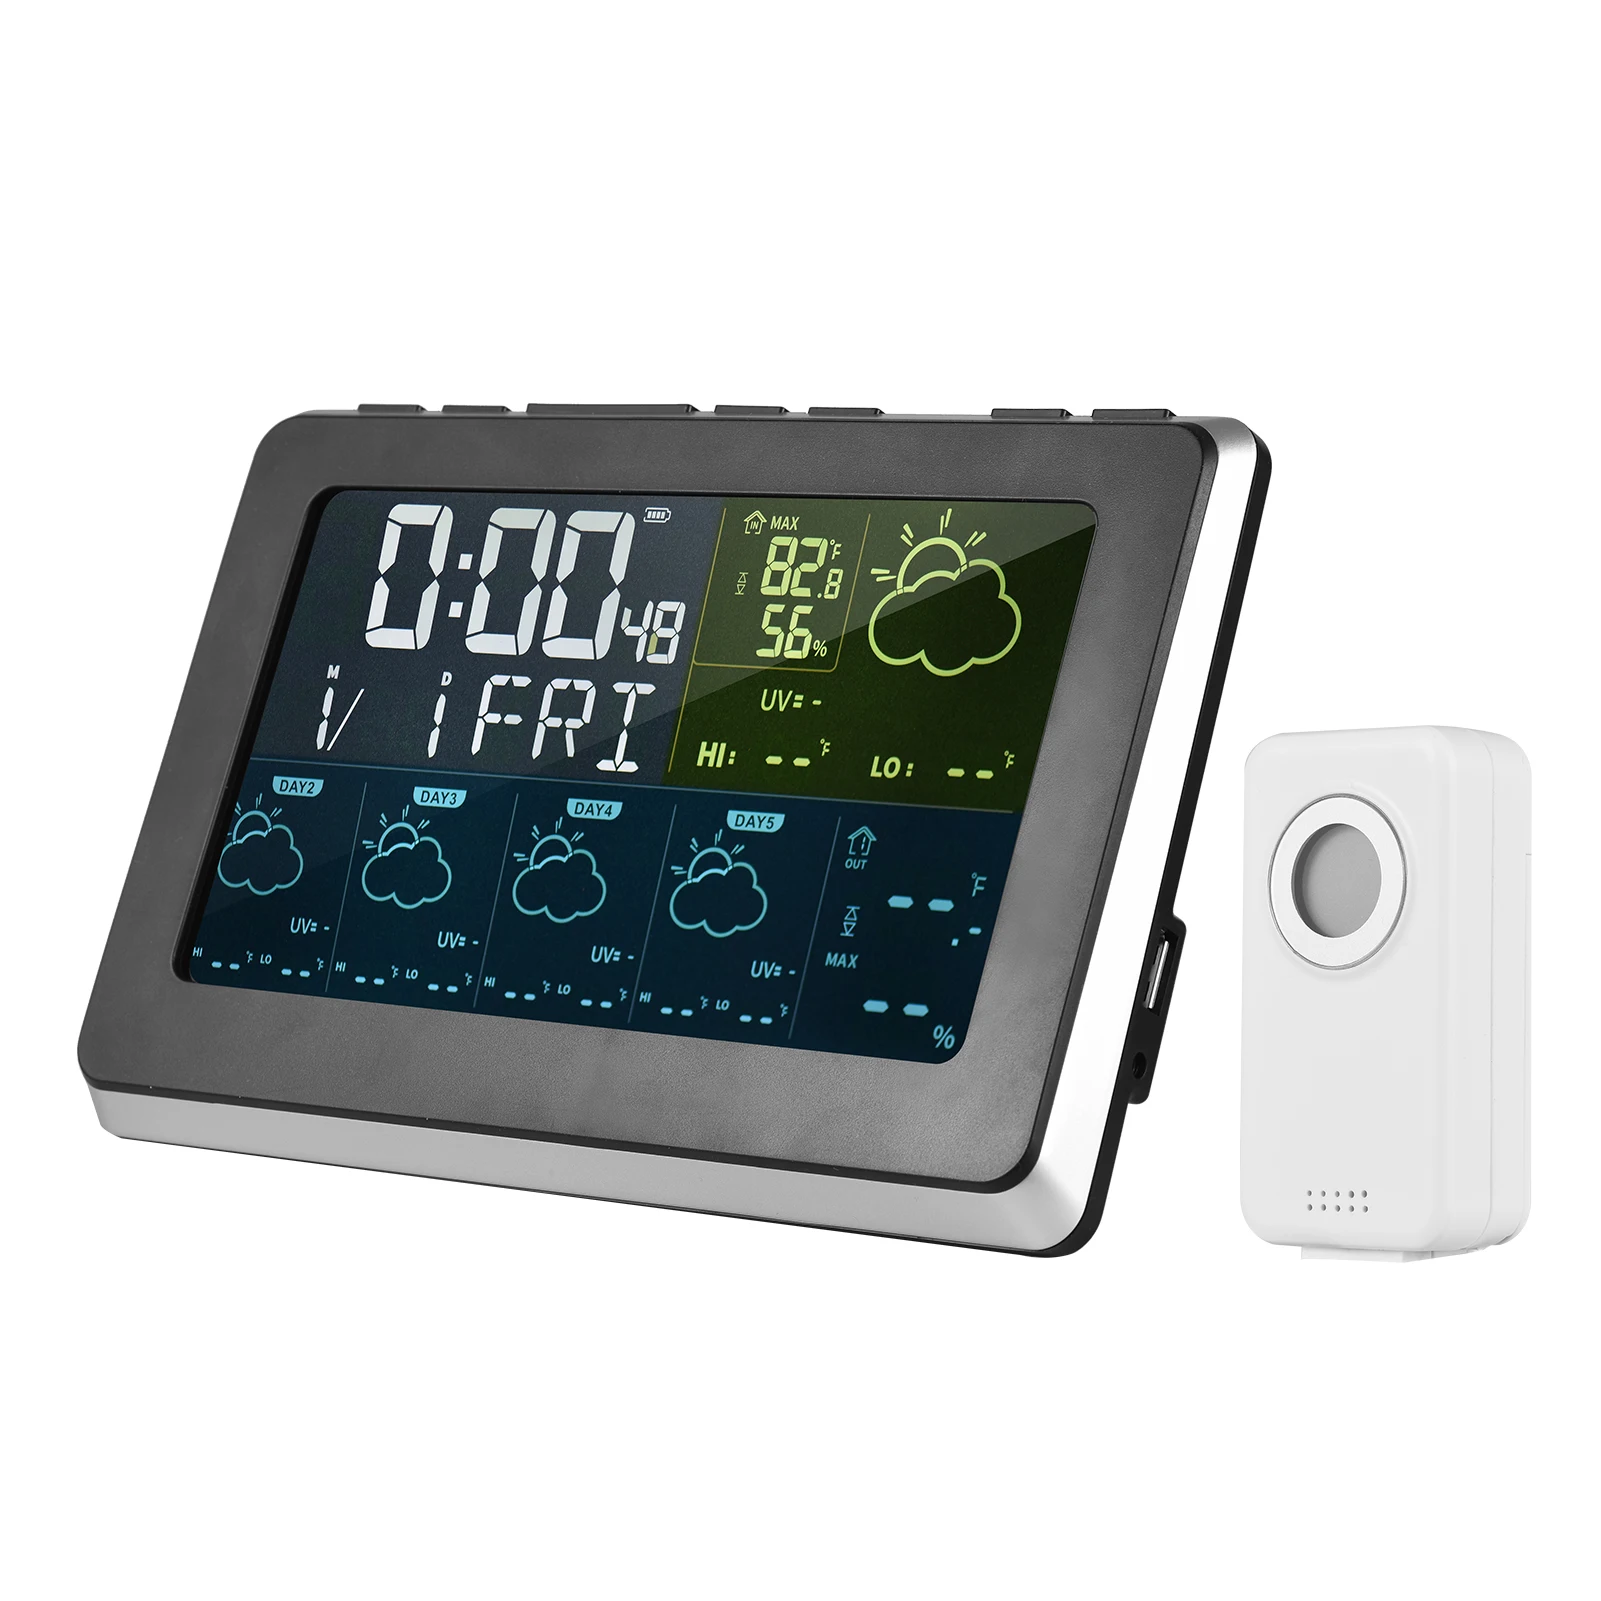 

Беспроводная метеостанция Tuya с будильником, часы для дома и улицы, измеритель температуры и влажности, телефон с приложением для управления